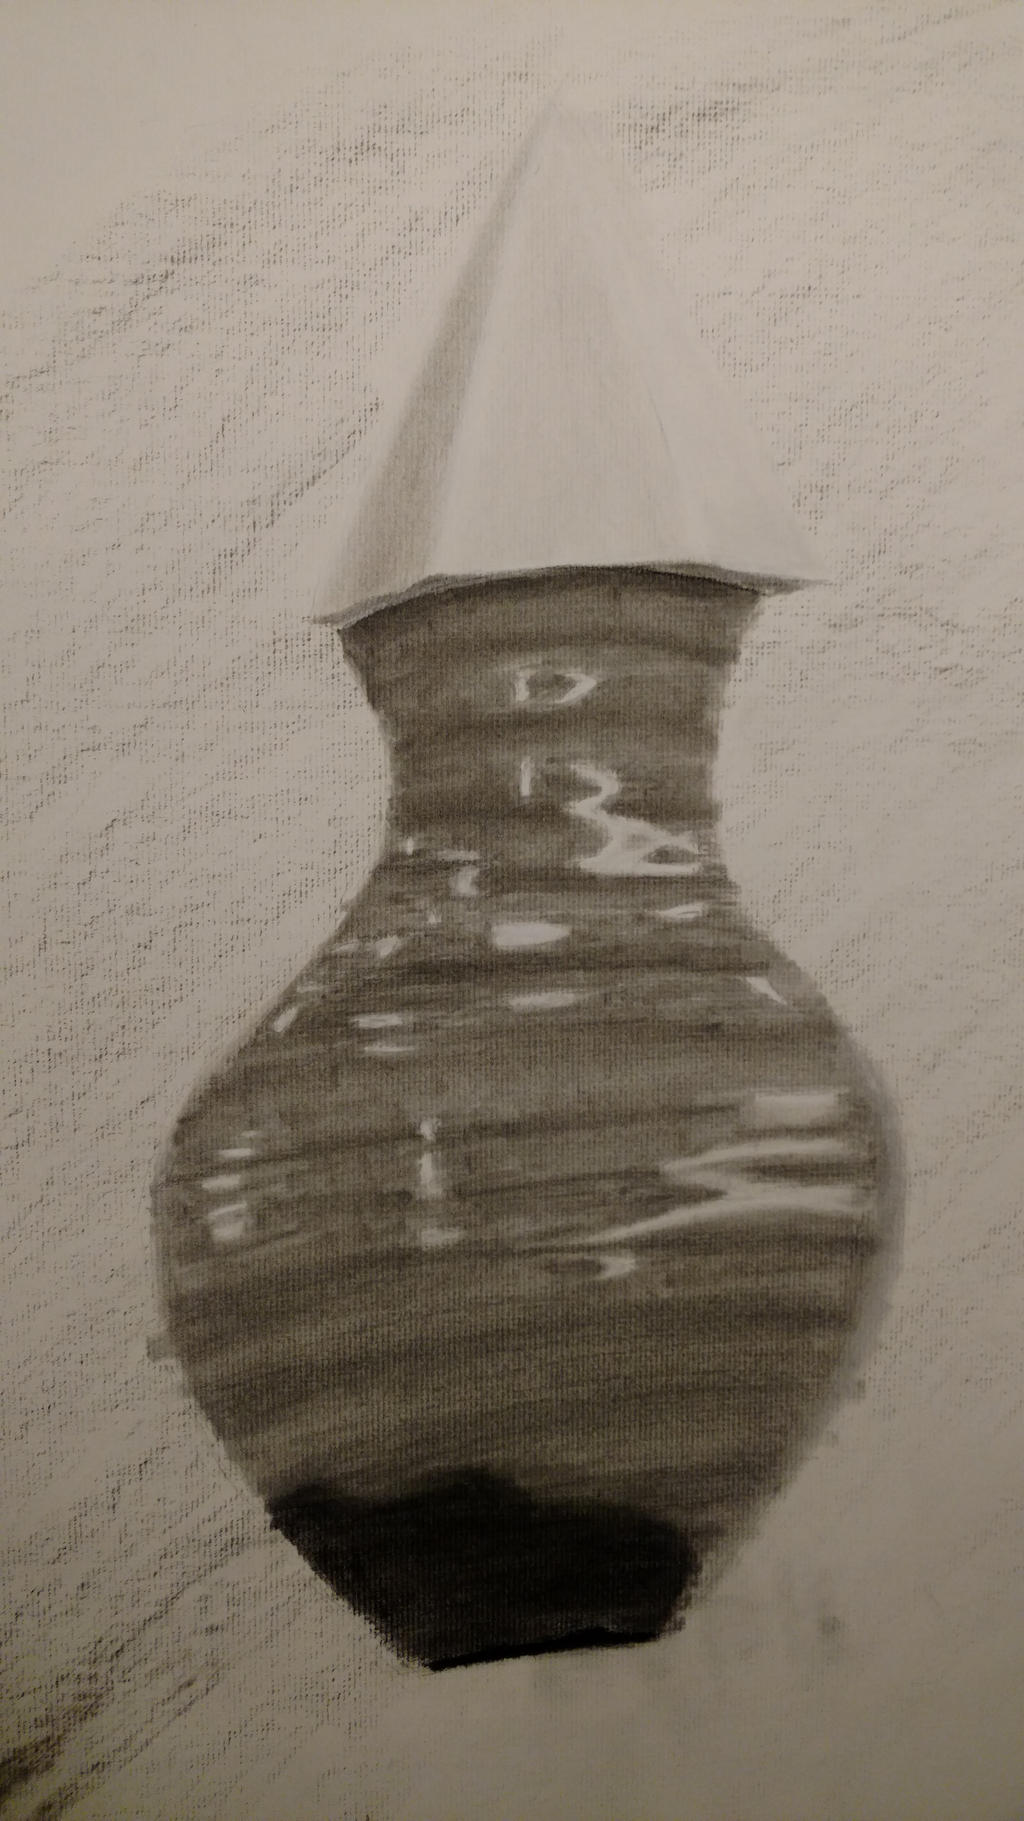 Shiny vase